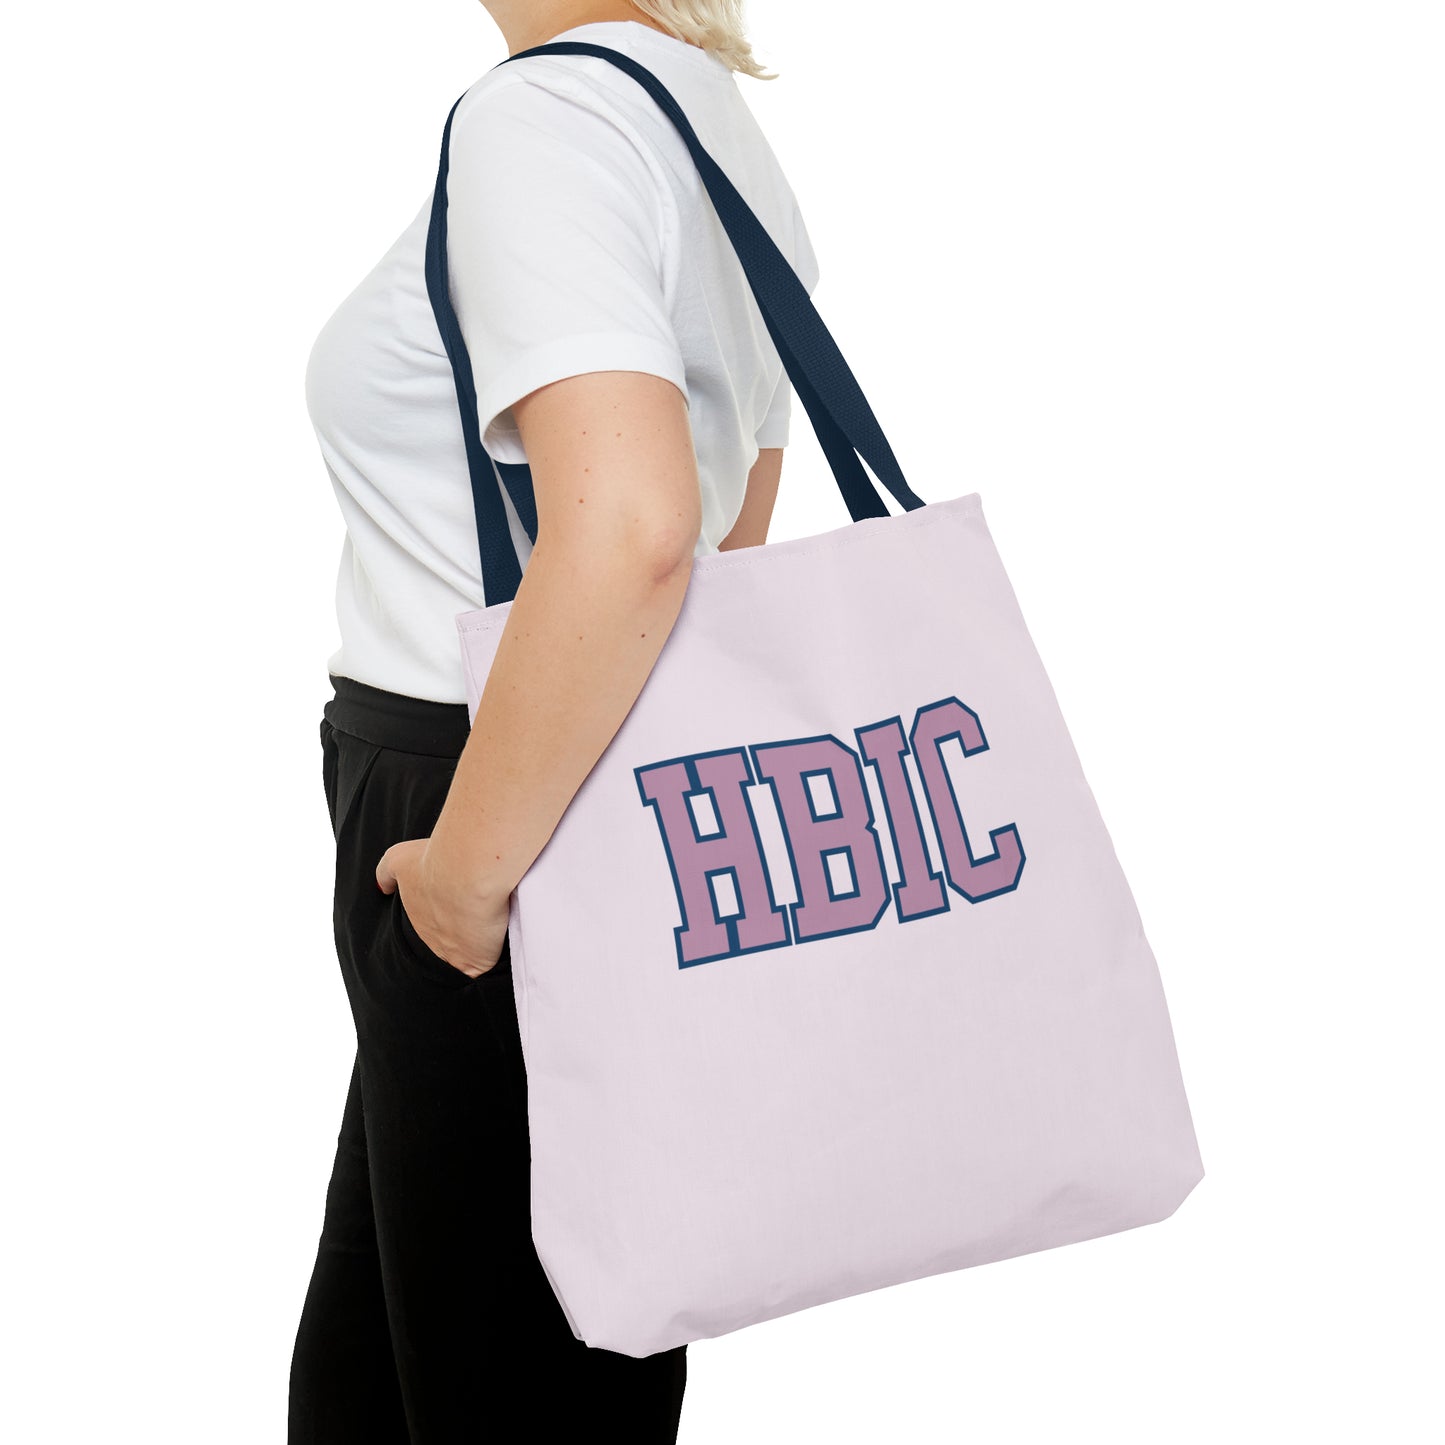 "HBIC" - Mom Tote Bag